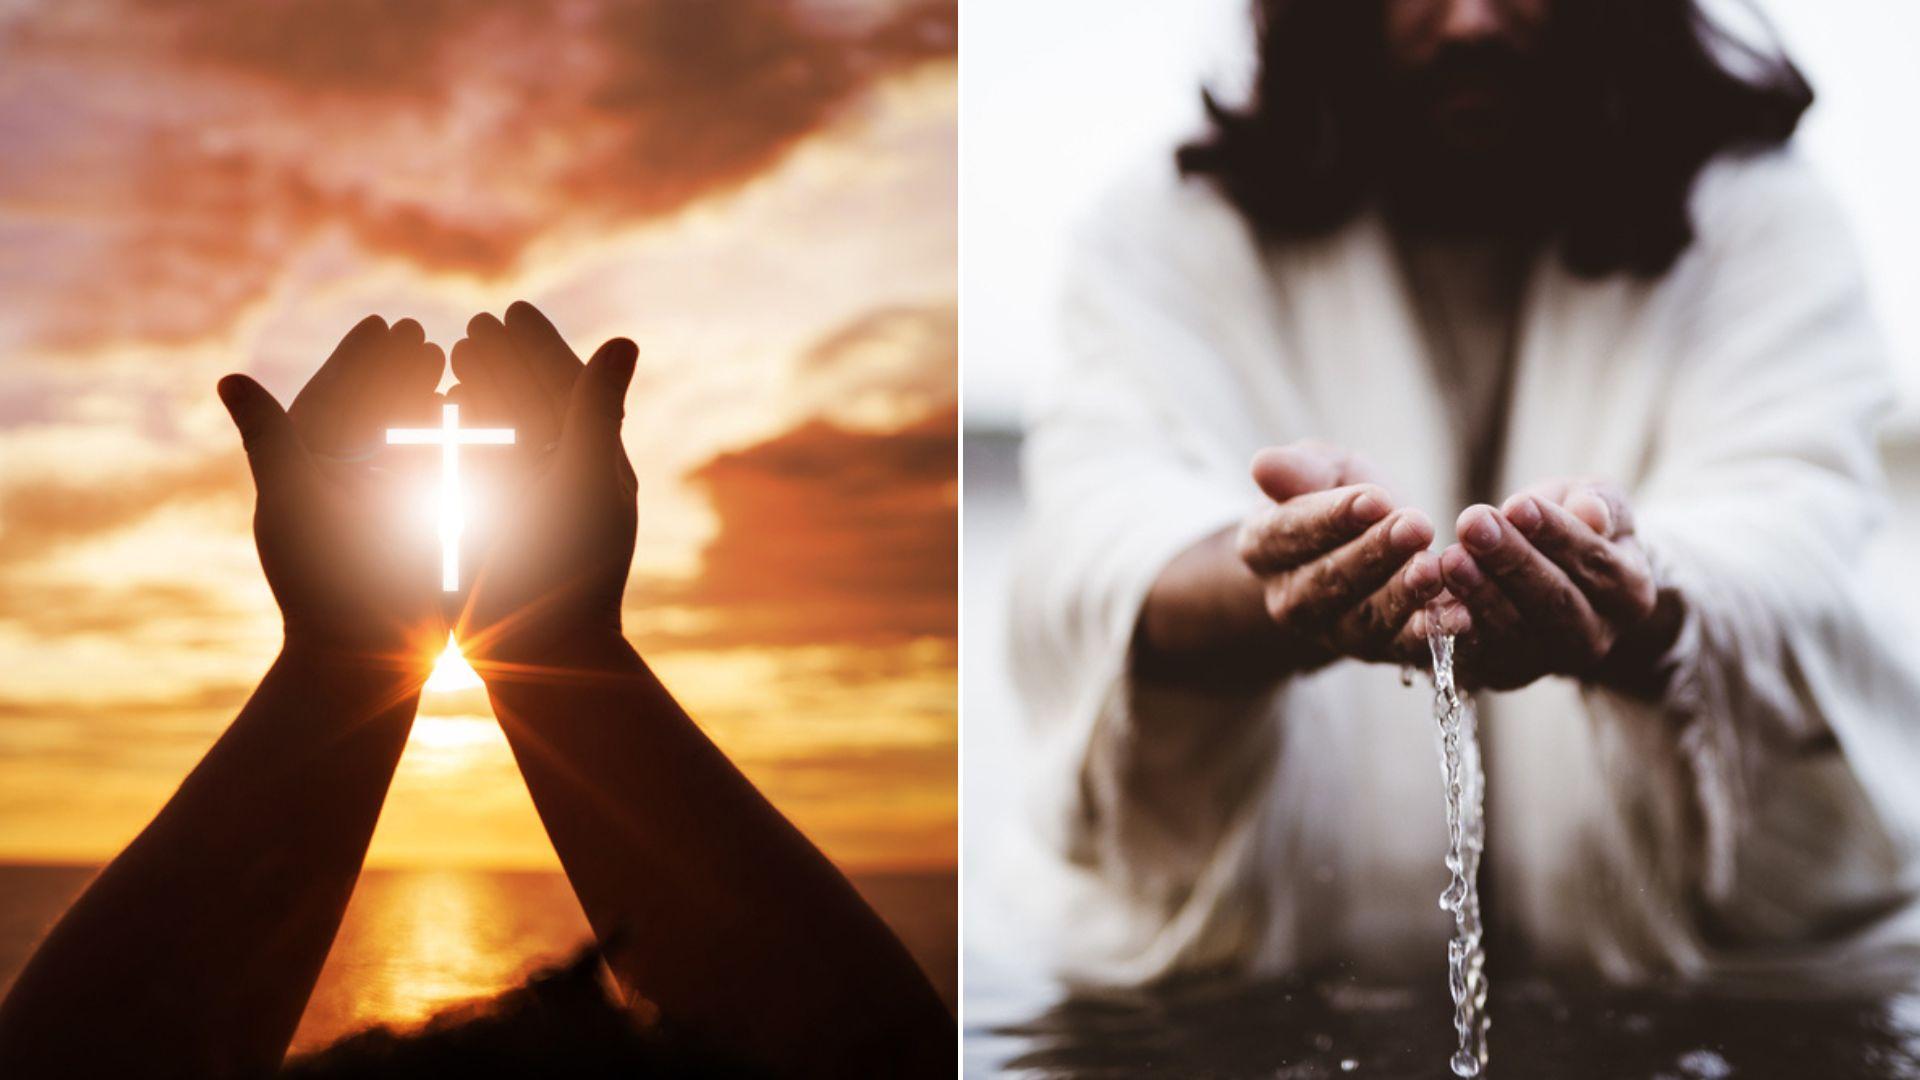 colaj de imagini cu o mana cu cruce si o imagine care il intruchipeaza pe iisus hristos la botez